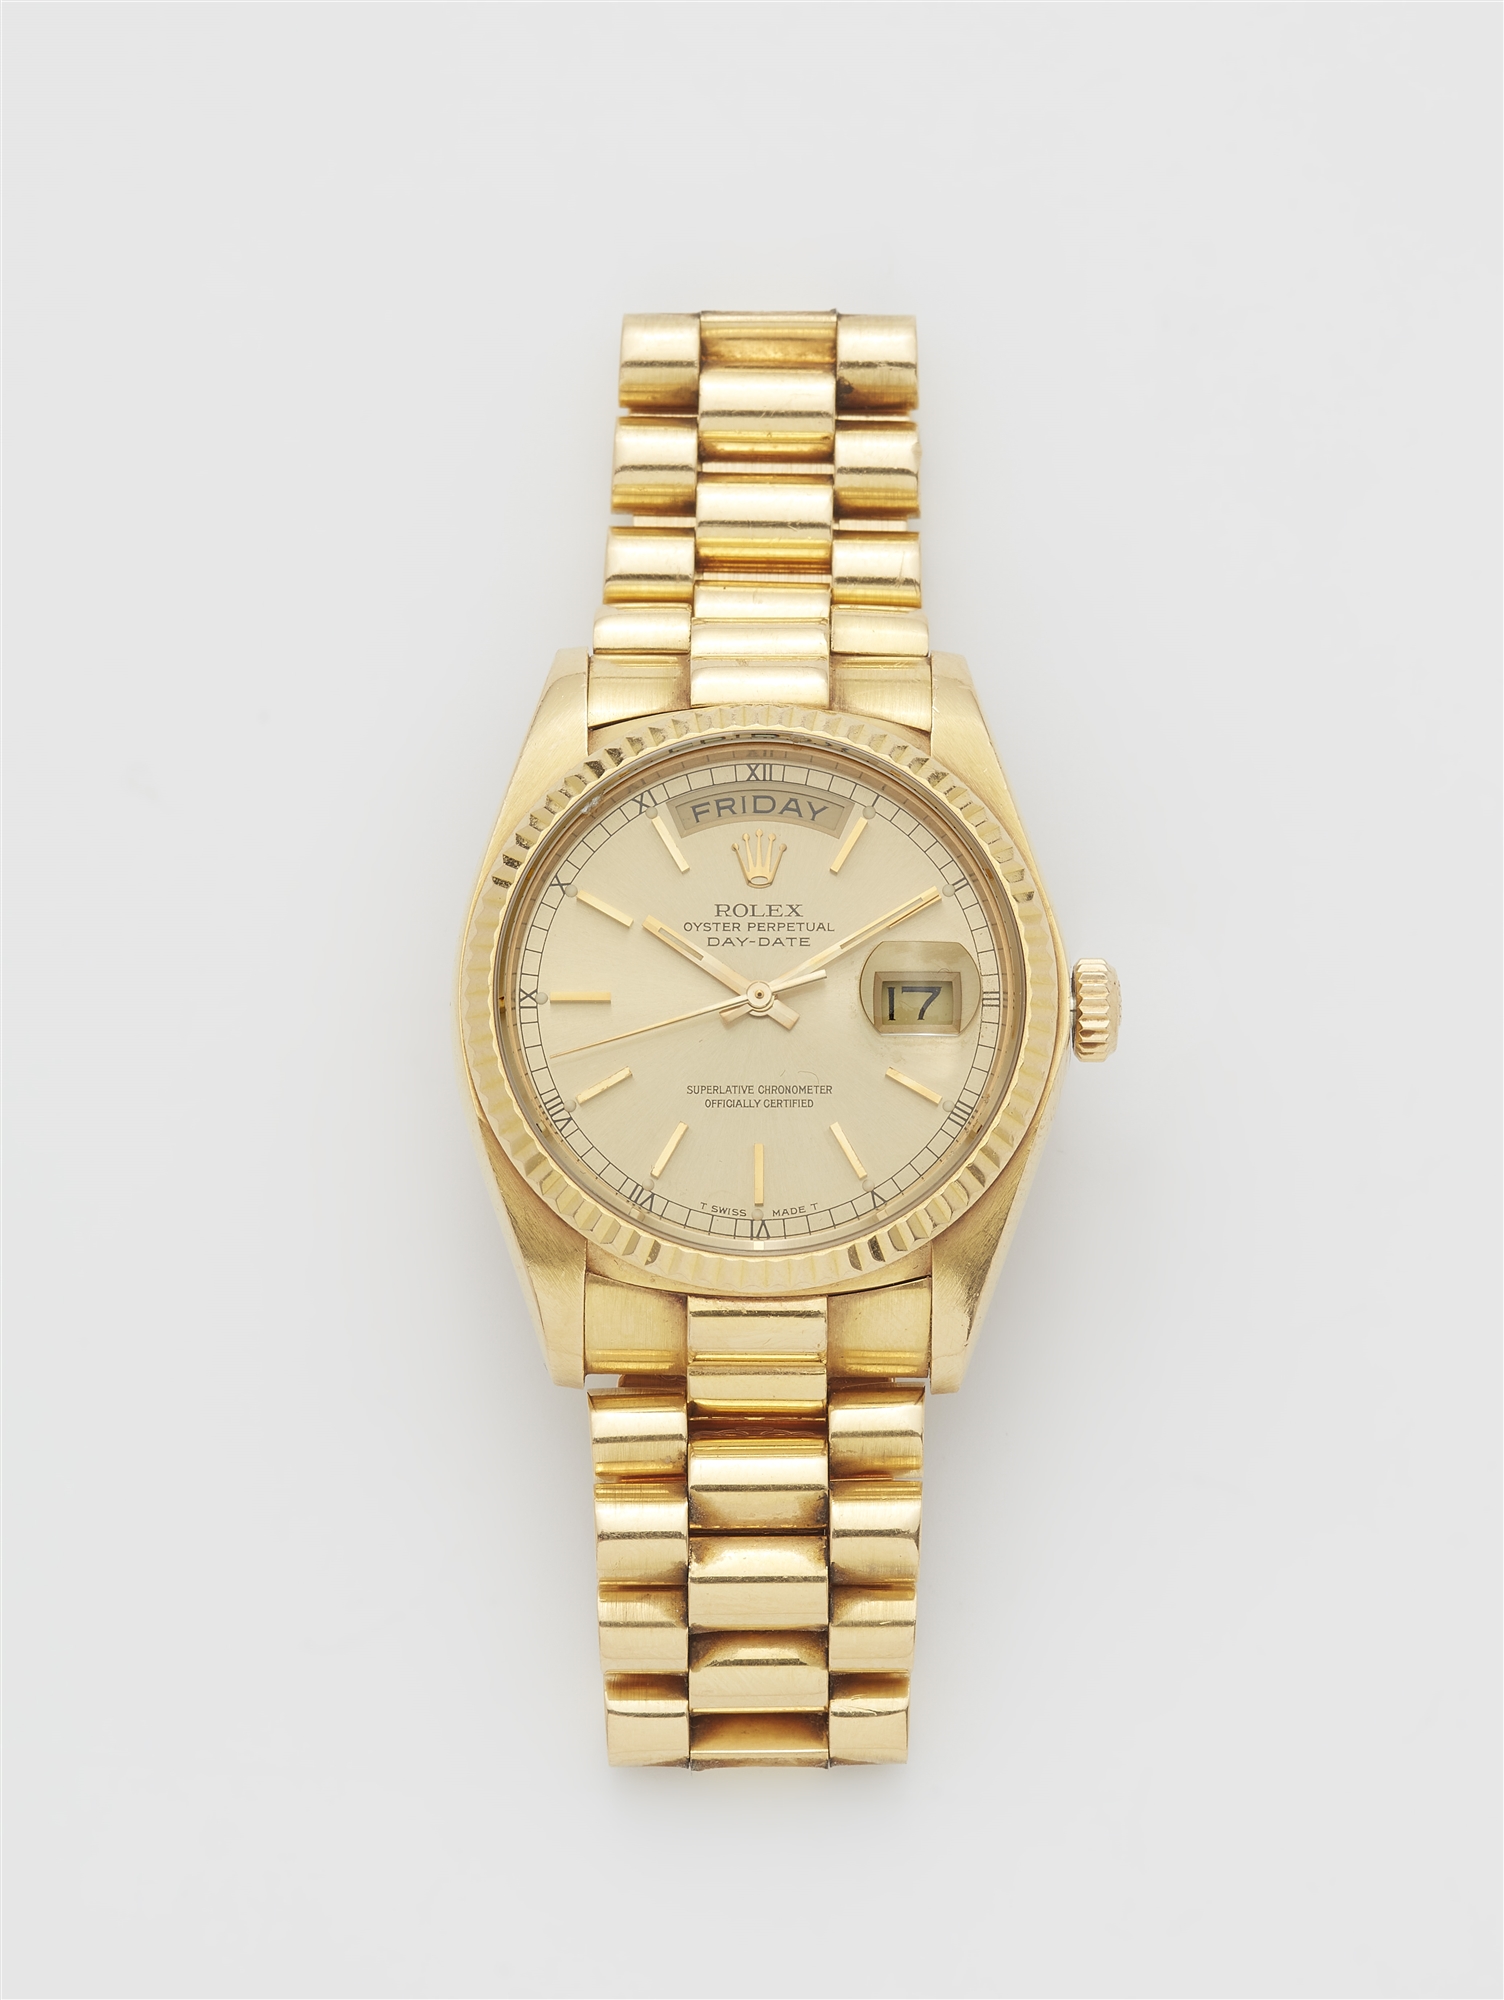 An 18k yellow gold Rolex day date gentleman´s wristwatch.